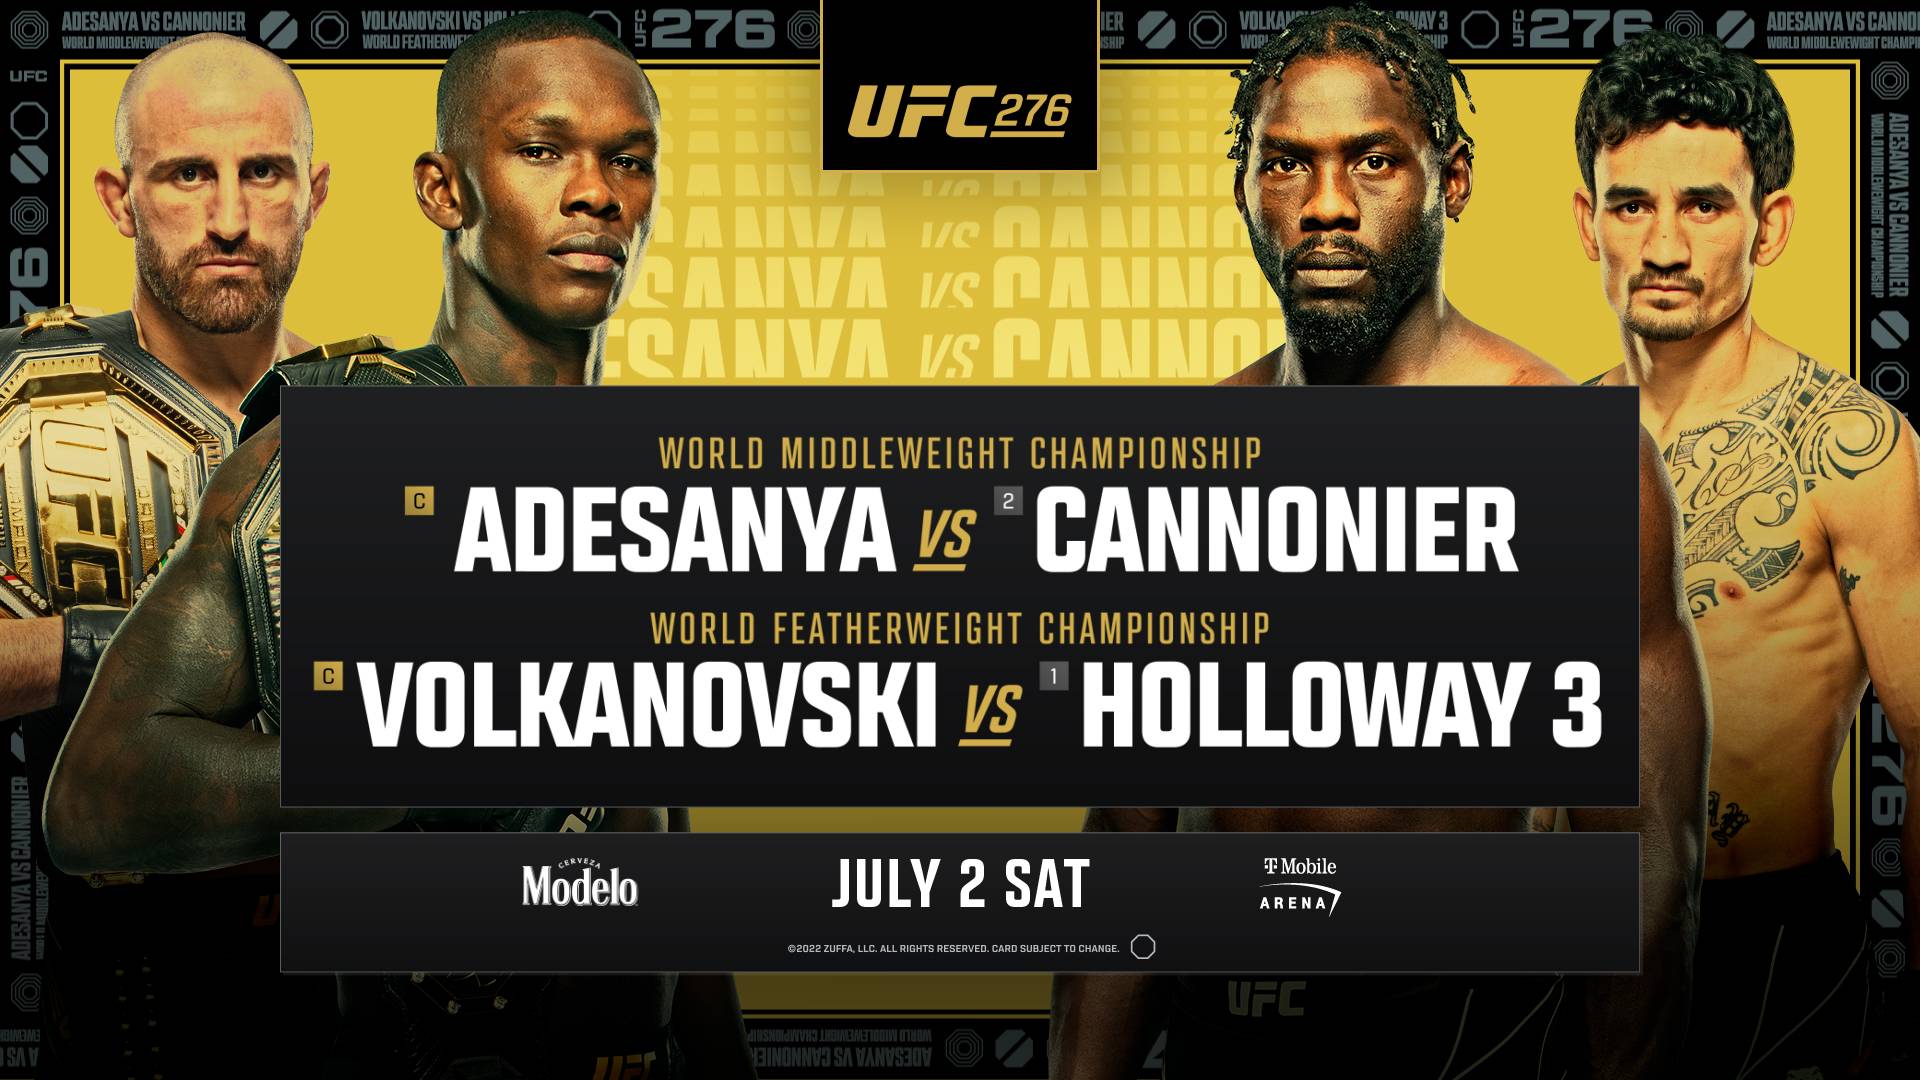 UFC 276 – Adesanya vs Cannonier Odds & Predictions